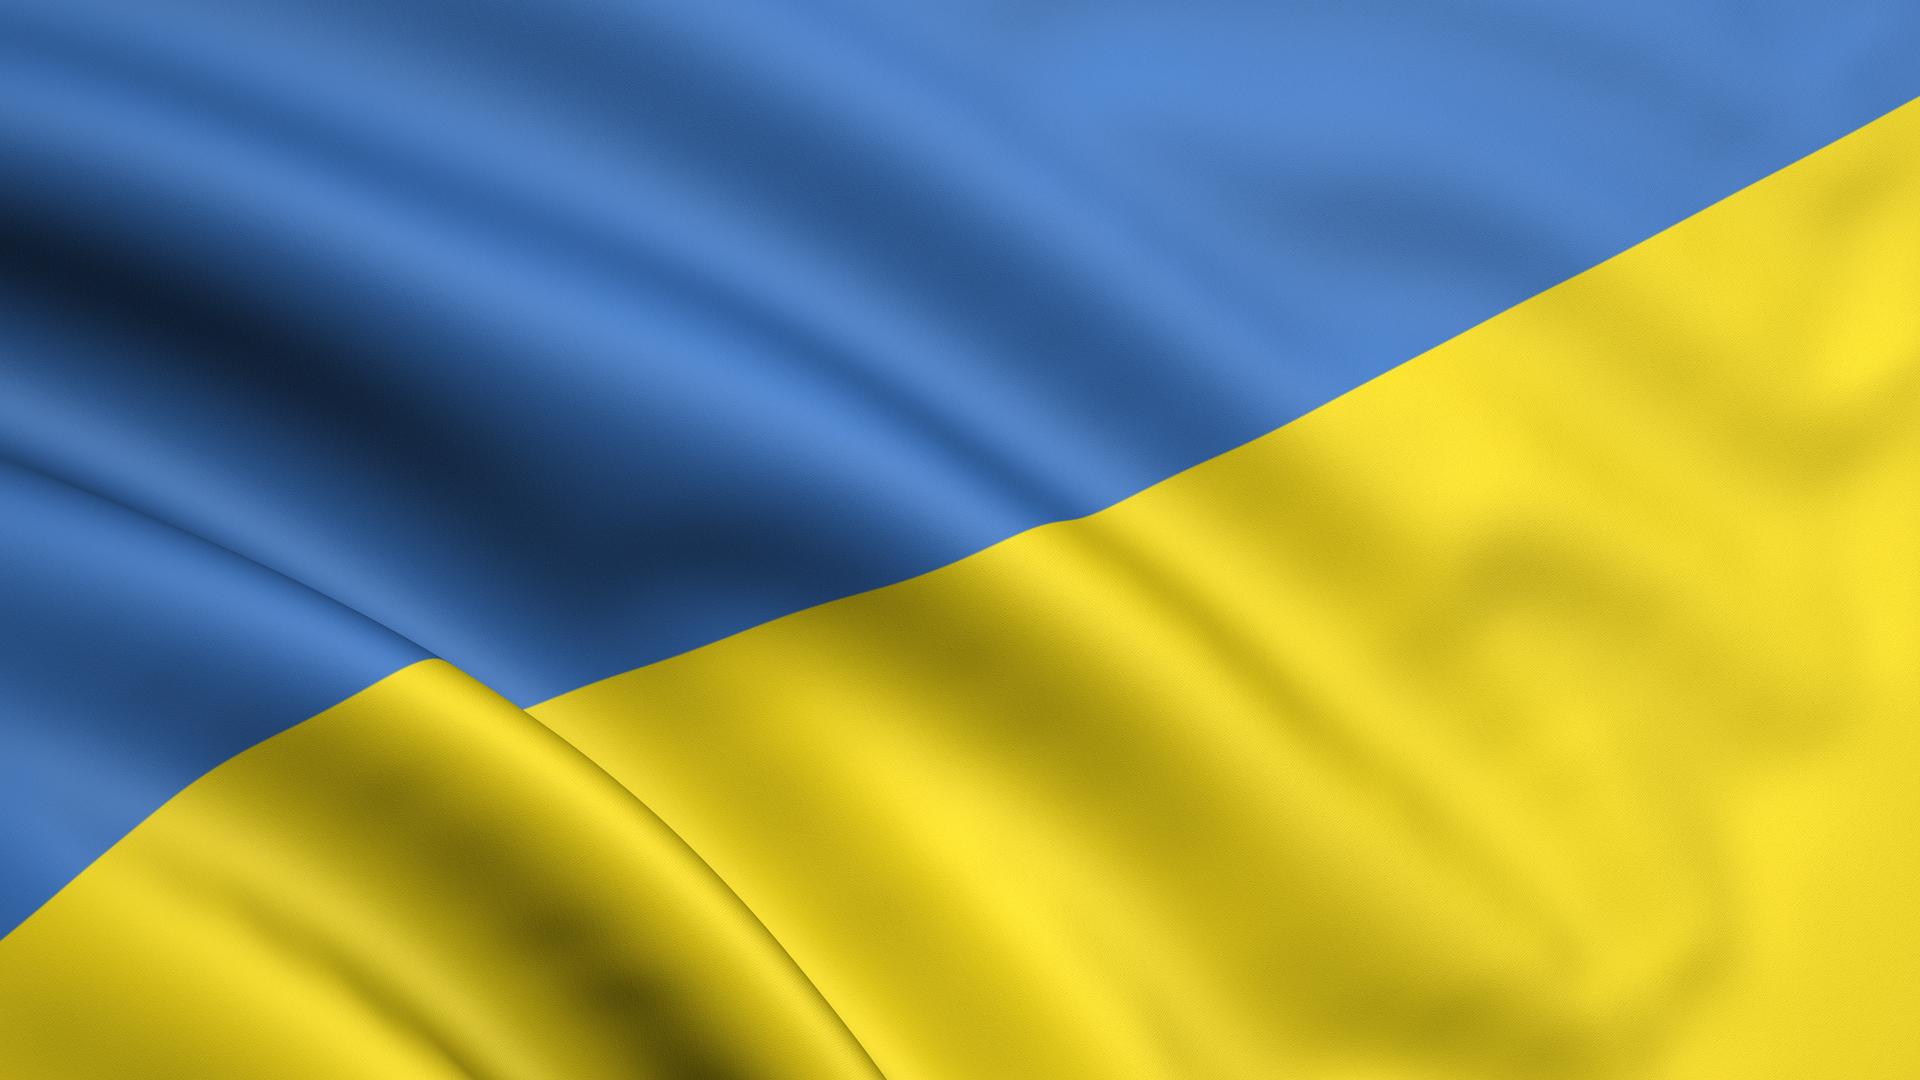 "Ялта - это Украина": как оккупационные власти города привел в бешенство украинский флаг